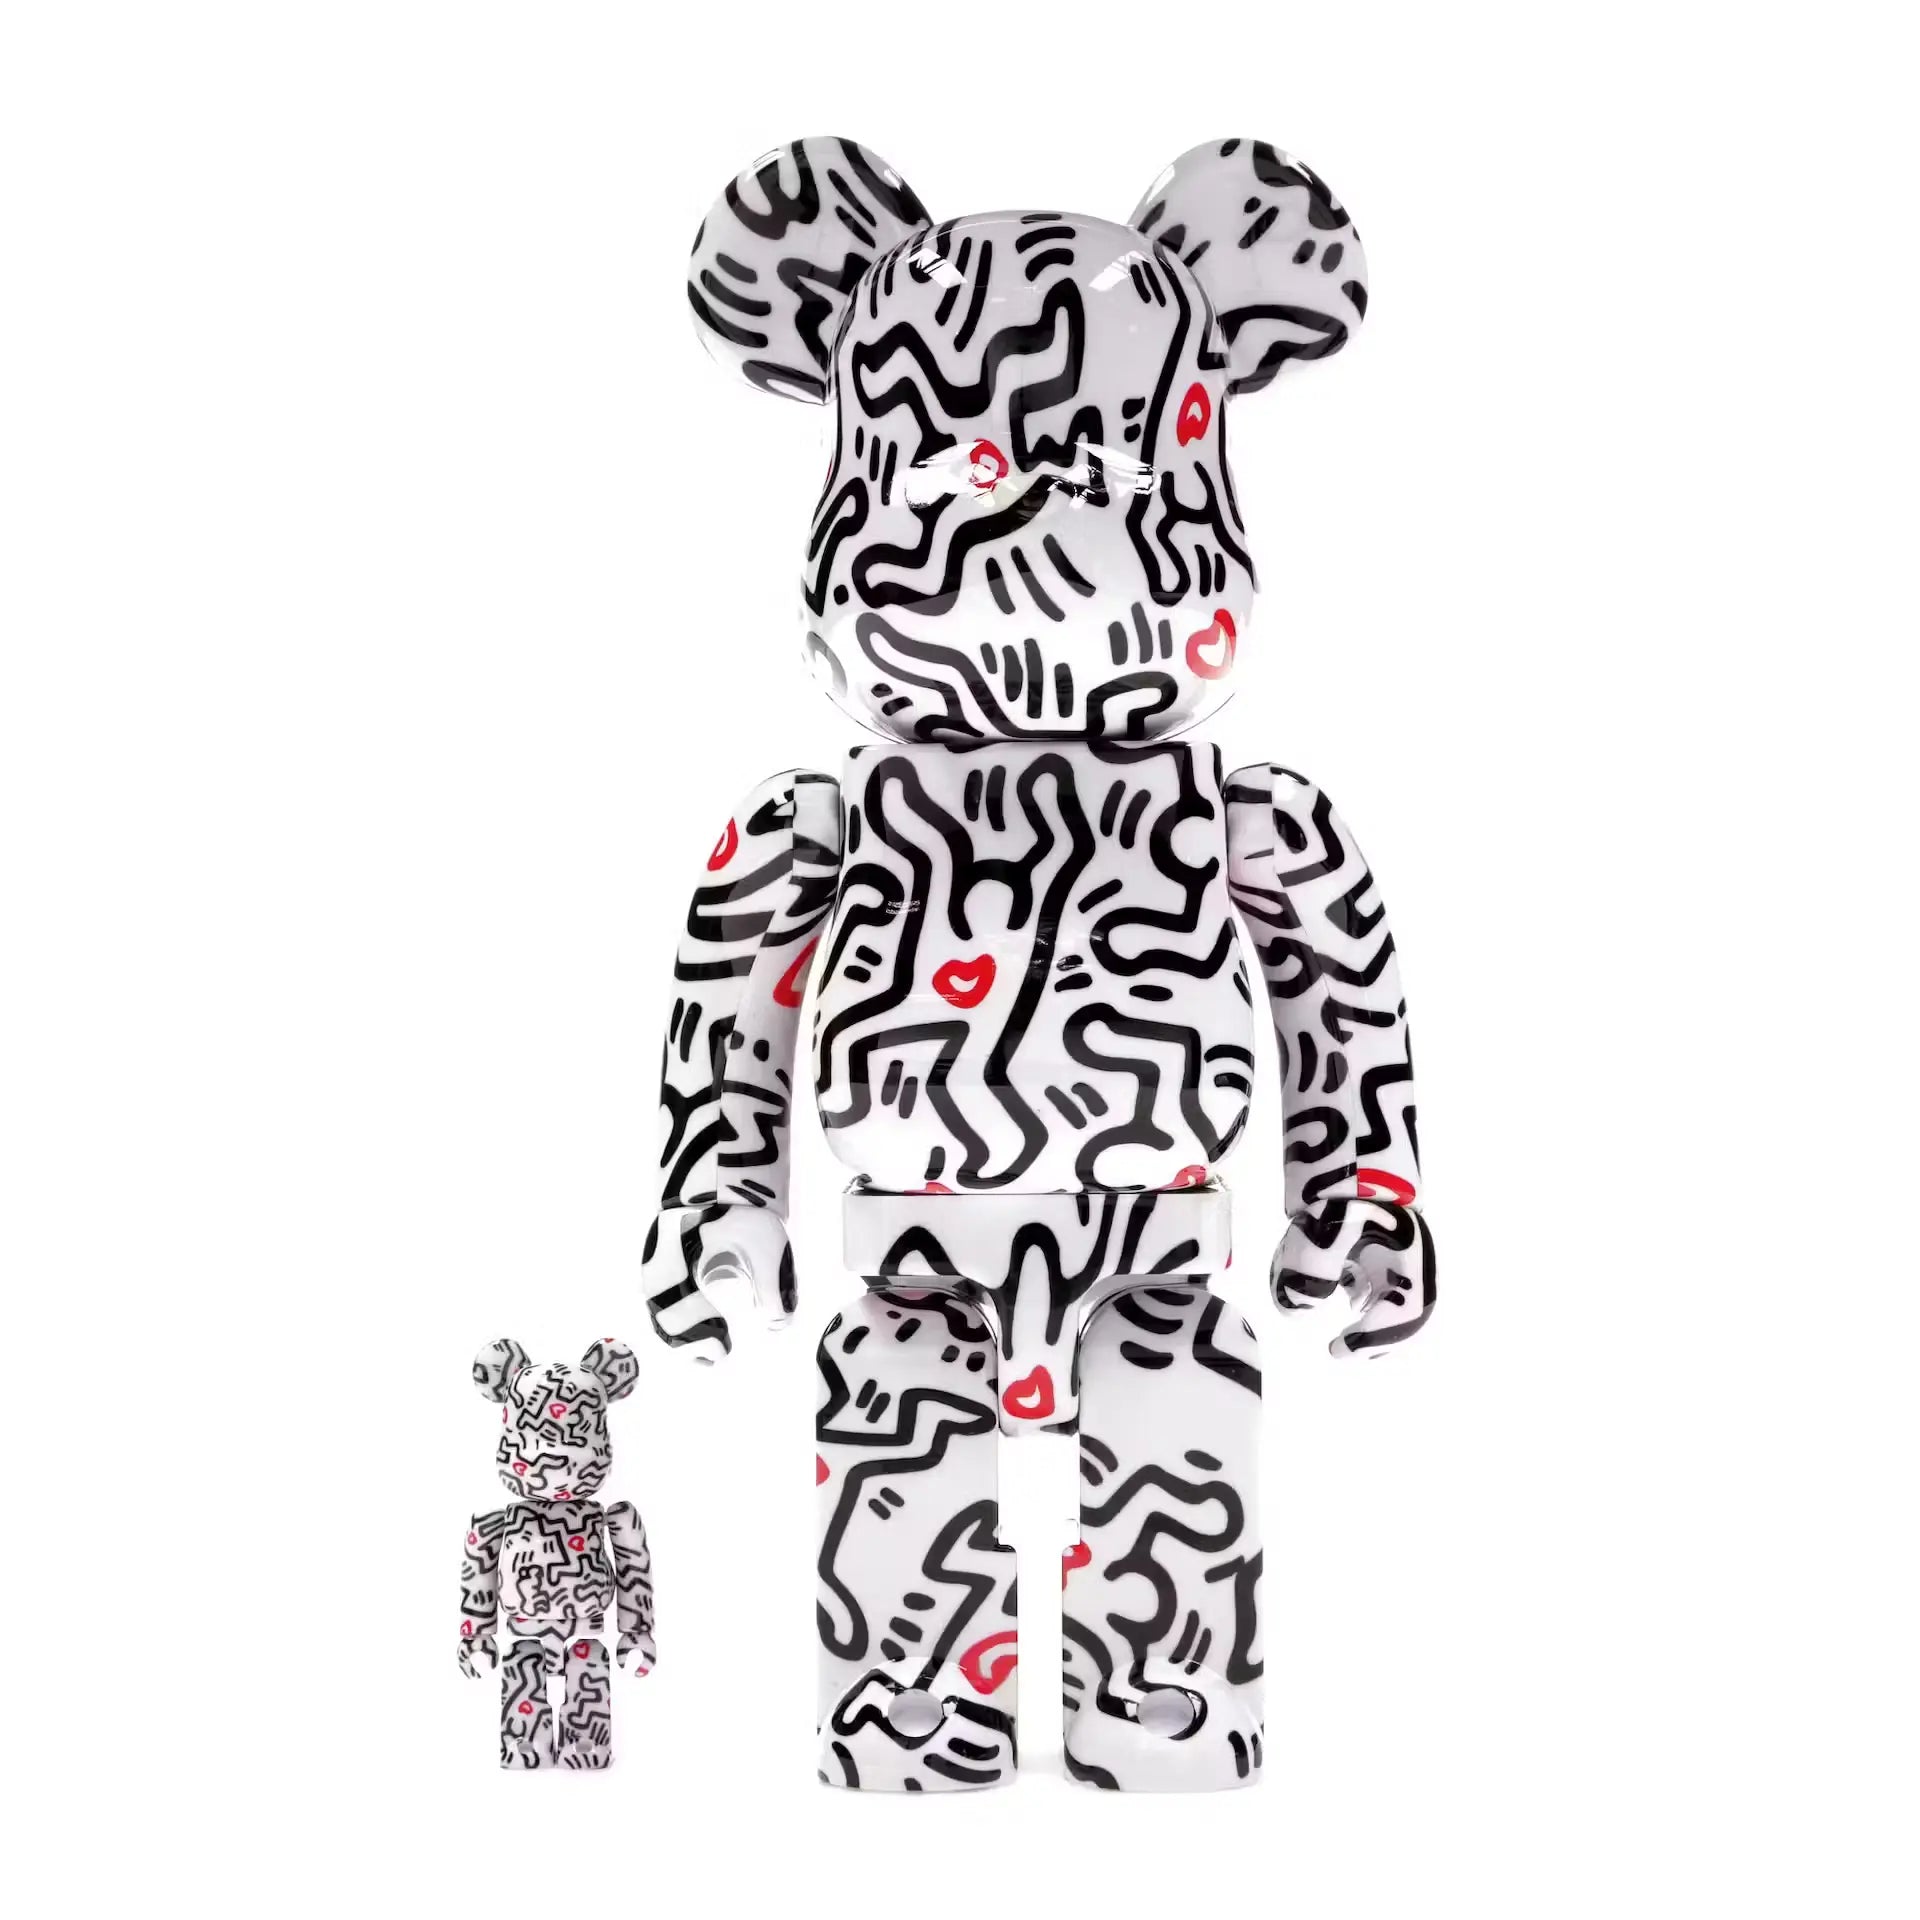 Keith Haring #8 100% & 400% Set